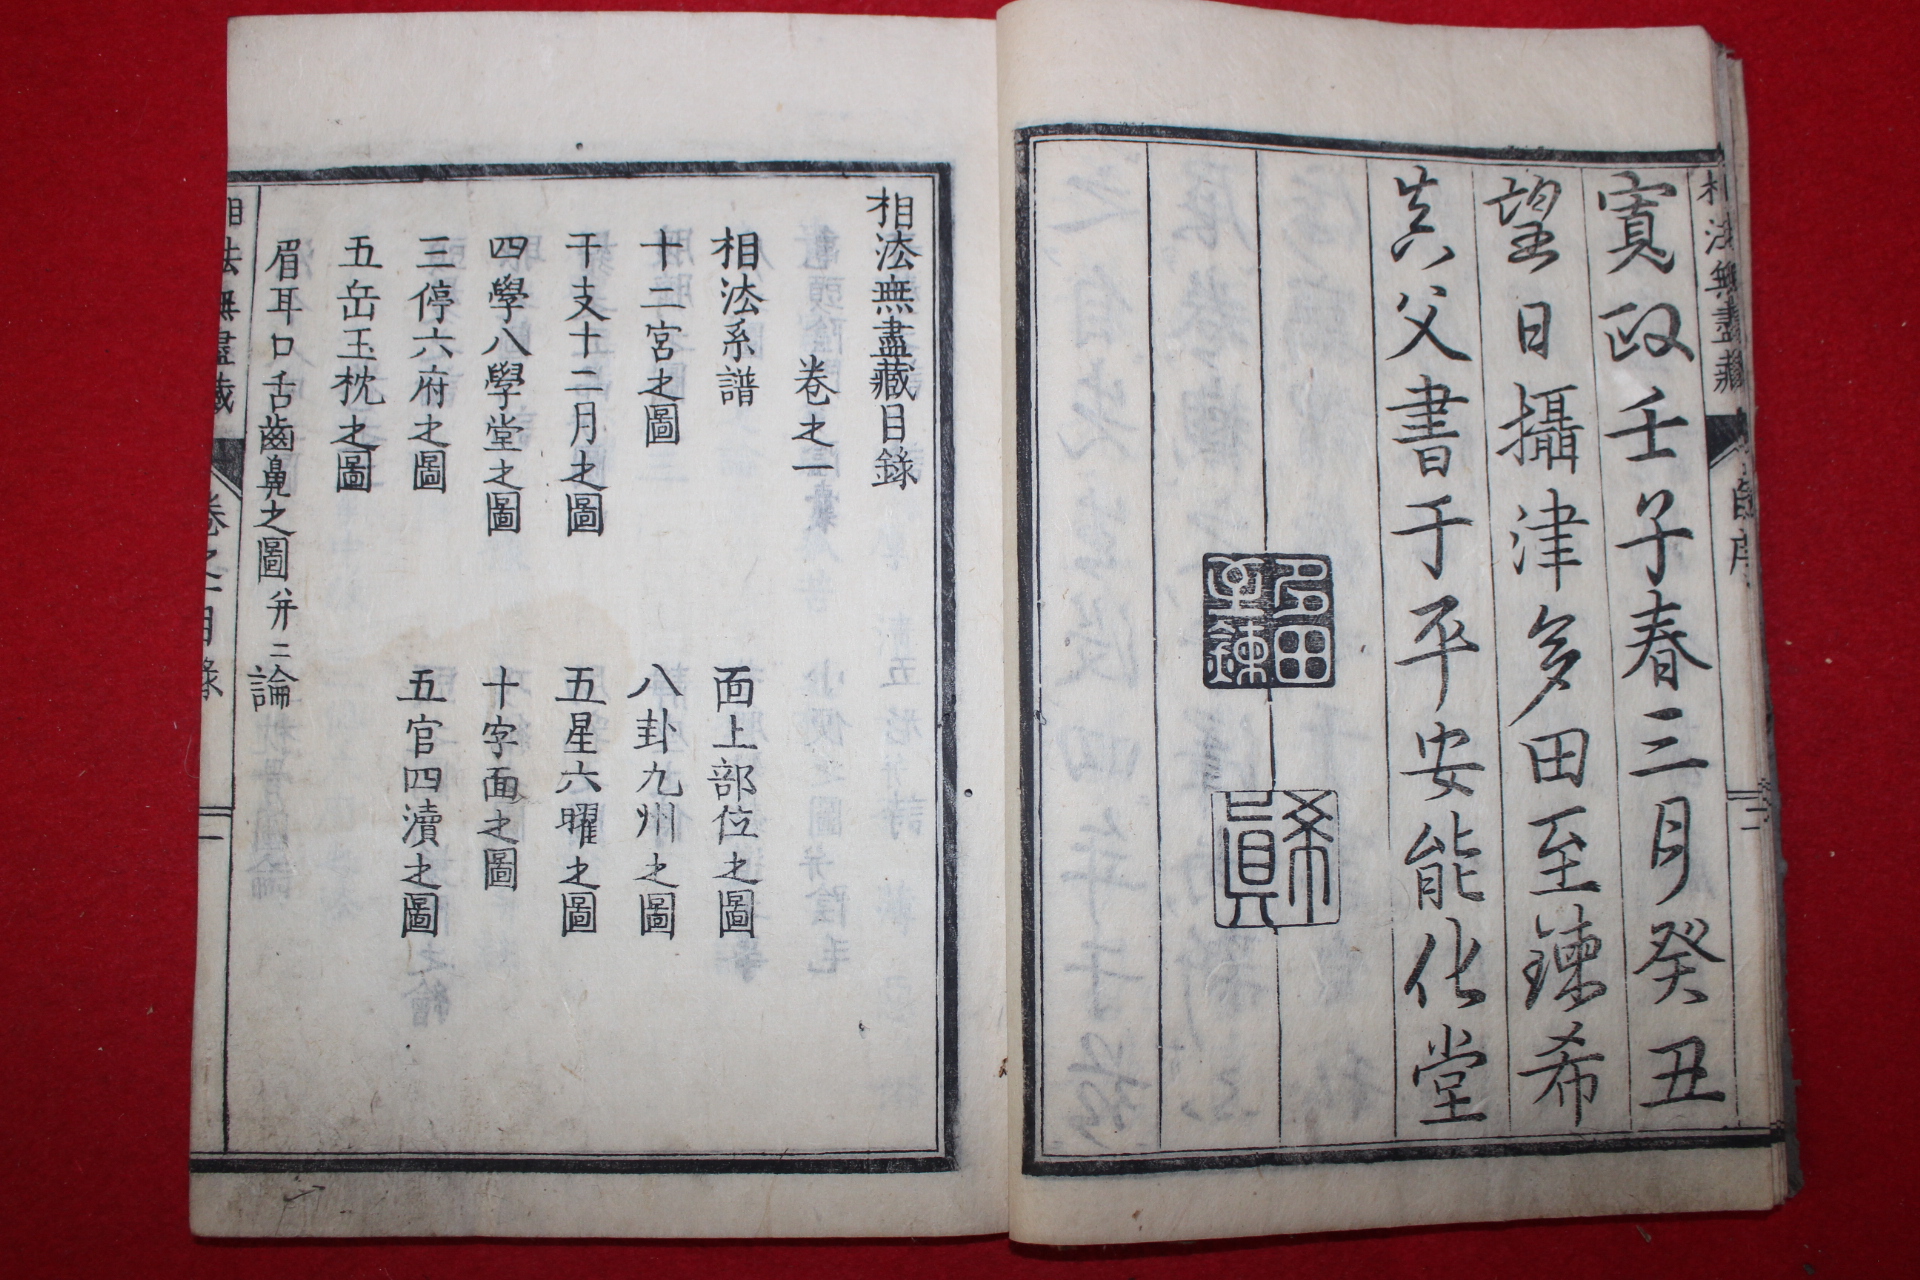 1793년(寬政4年) 목판본 관상관련 상법무화장(相法無畵藏) 4책